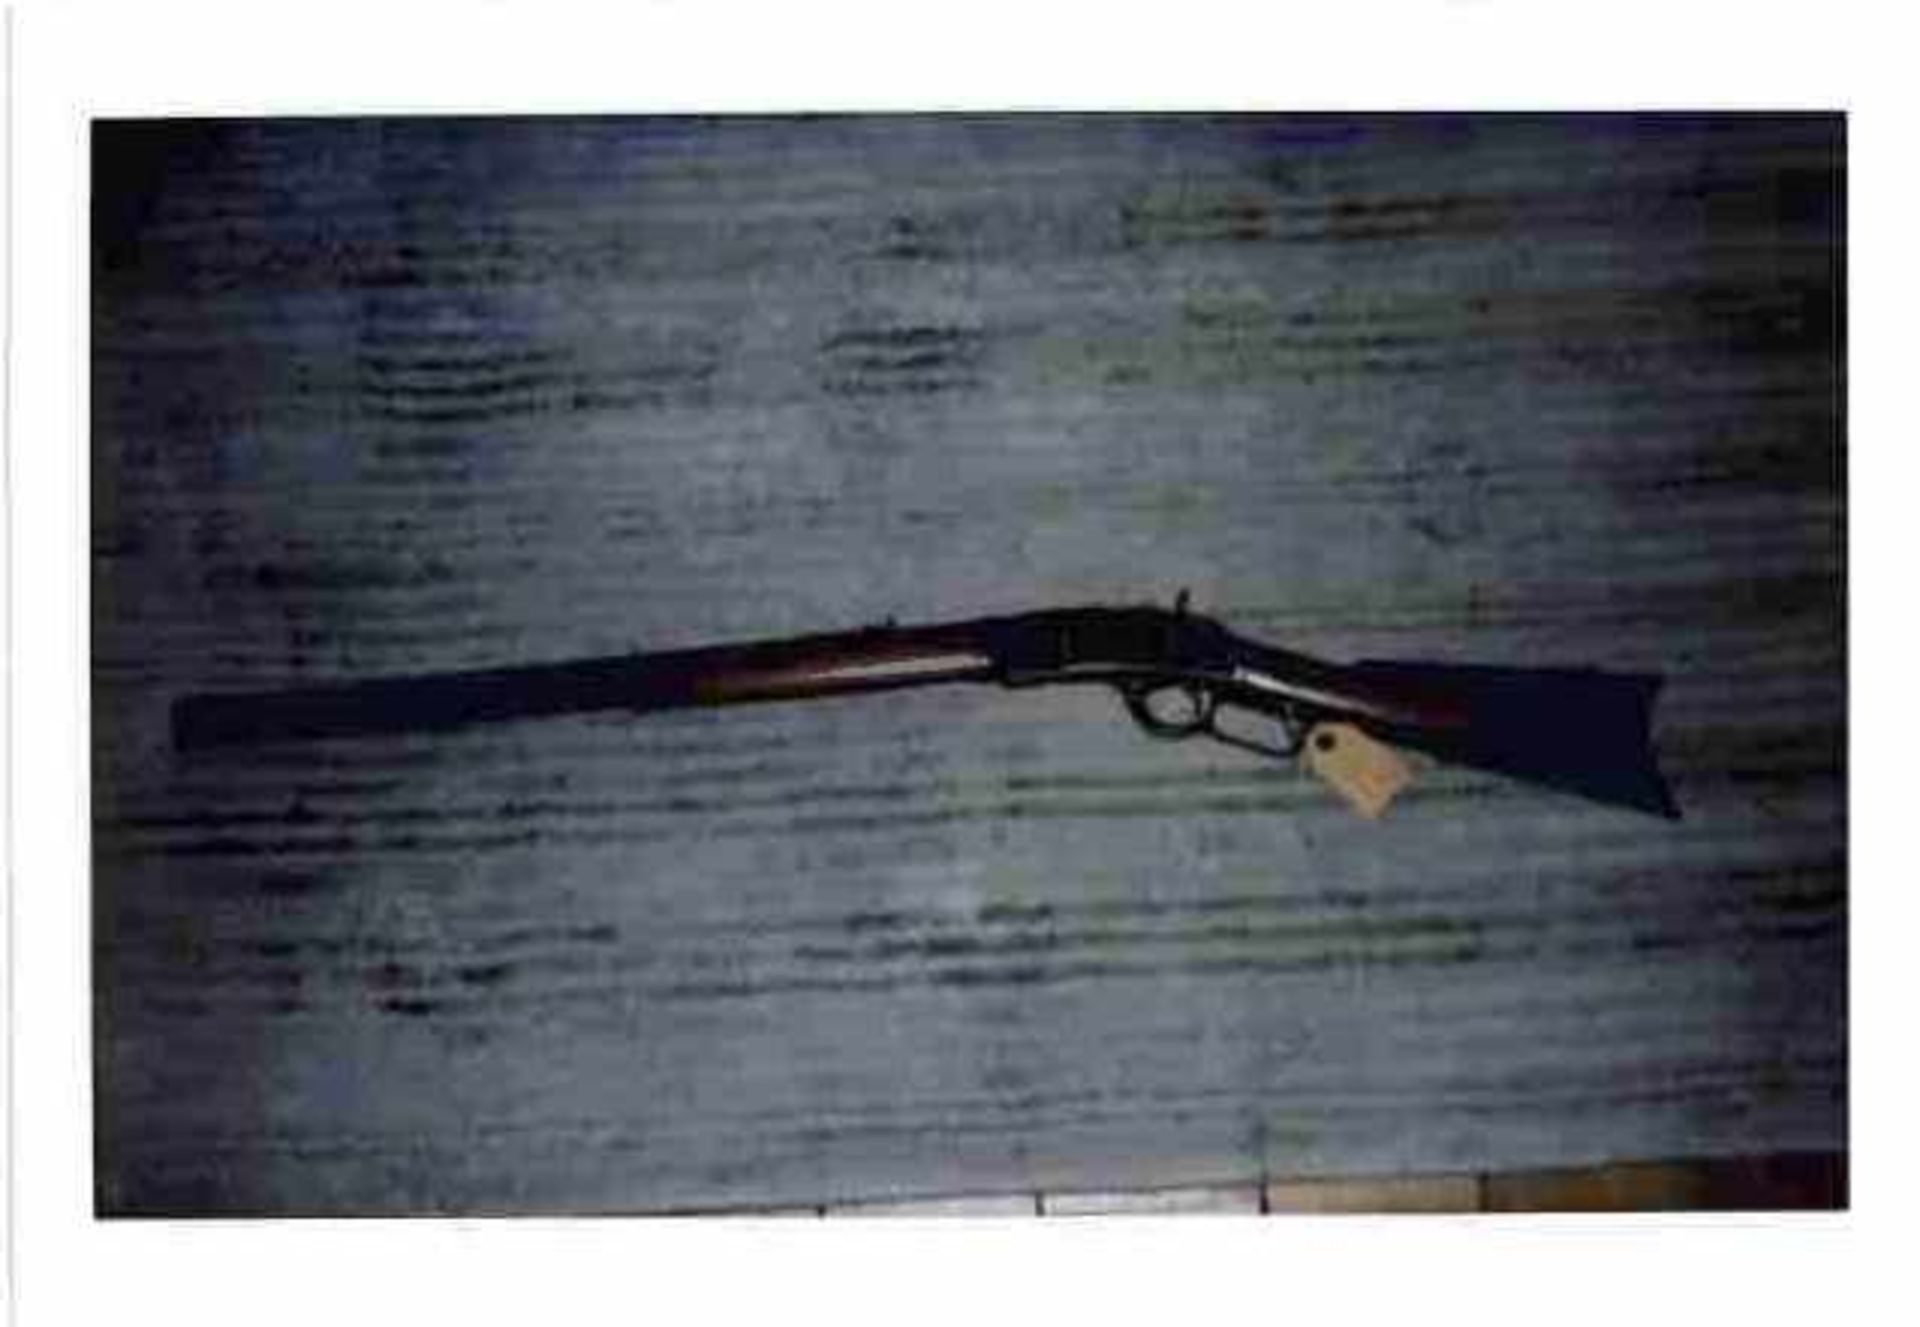 Carabine Winchester 1873 Catégorie D. Crosse bois, modèle 1873. Numéro de série 218925B . A noter